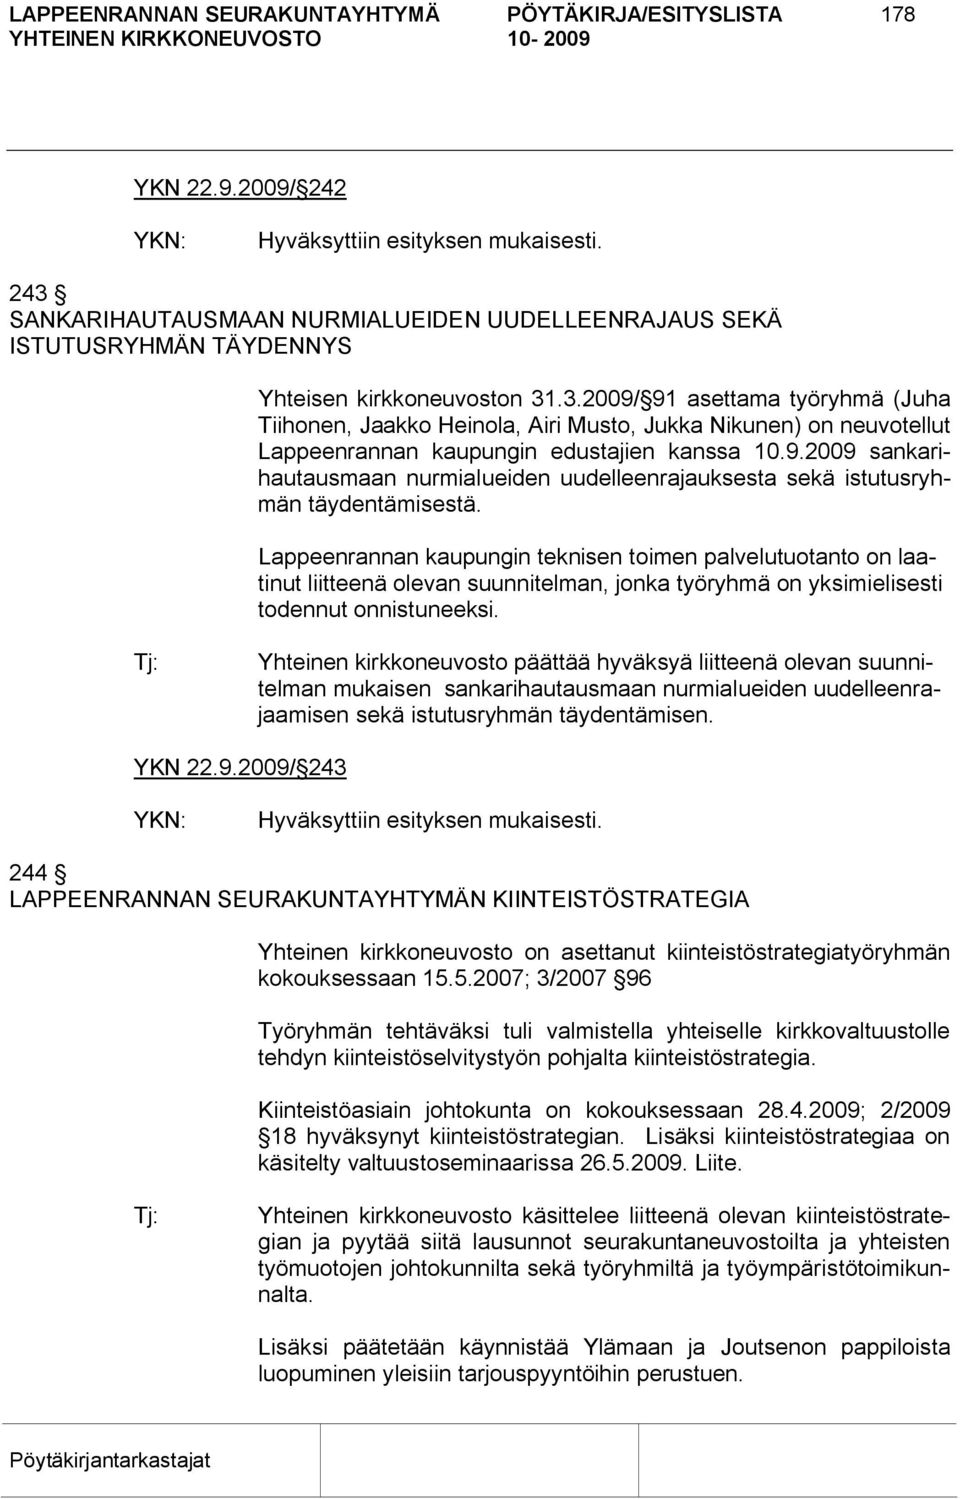 .3.2009/ 91 asettama työryhmä (Juha Tiihonen, Jaakko Heinola, Airi Musto, Jukka Nikunen) on neuvotellut Lappeenrannan kaupungin edustajien kanssa 10.9.2009 sankarihautausmaan nurmialueiden uudelleenrajauksesta sekä istutusryhmän täydentämisestä.